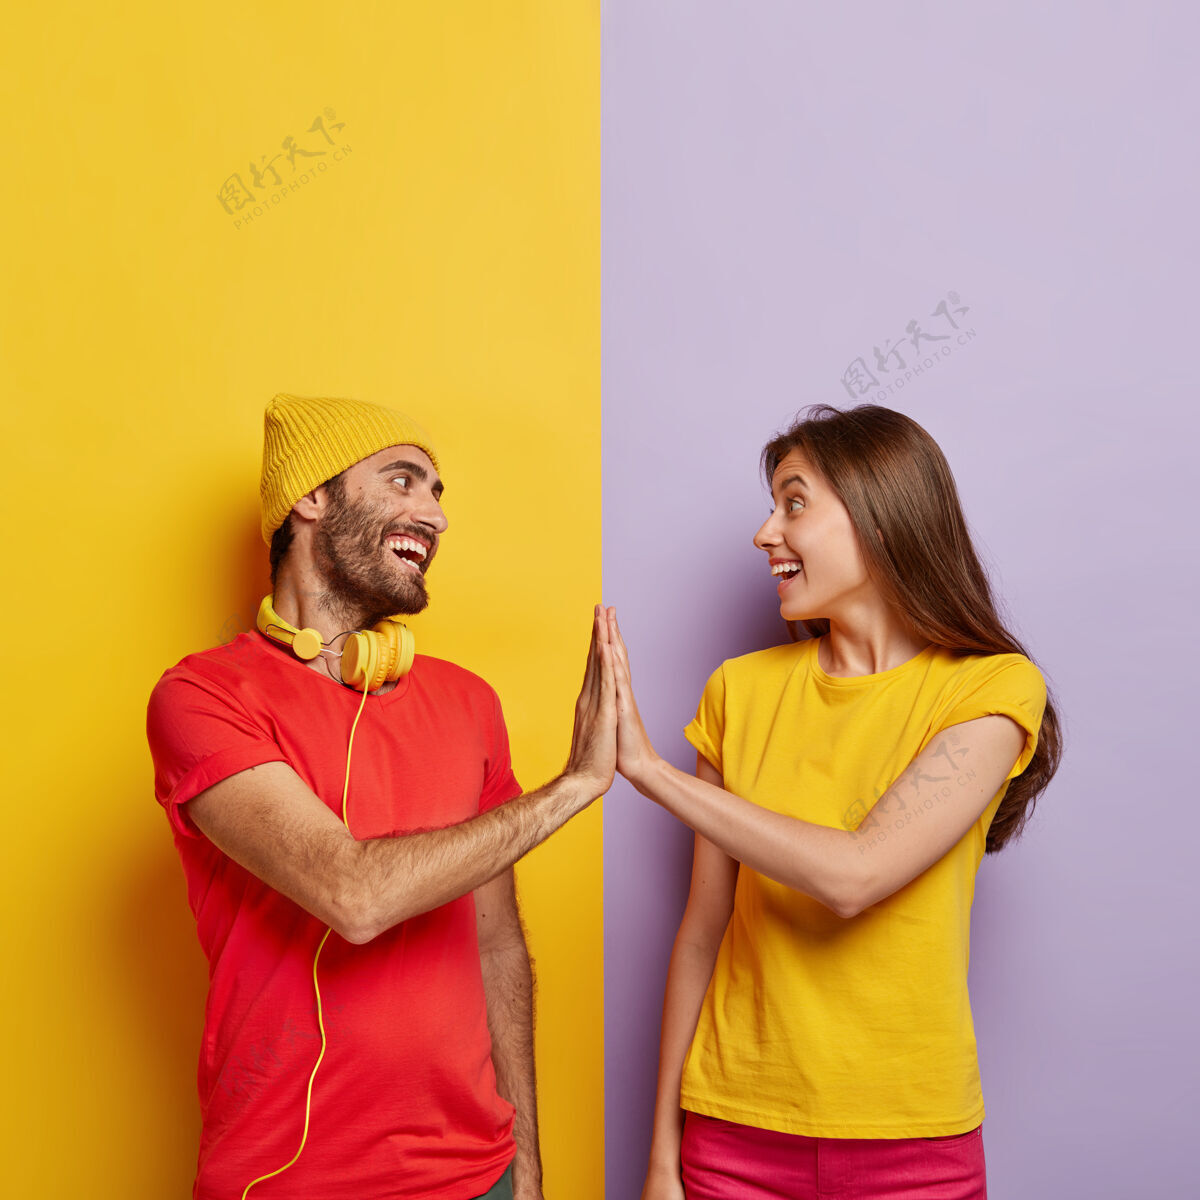 帽子高兴的男朋友和女朋友手相抚摸 积极的微笑 同意某事 穿着红黄相间的休闲t恤男性手势年轻人